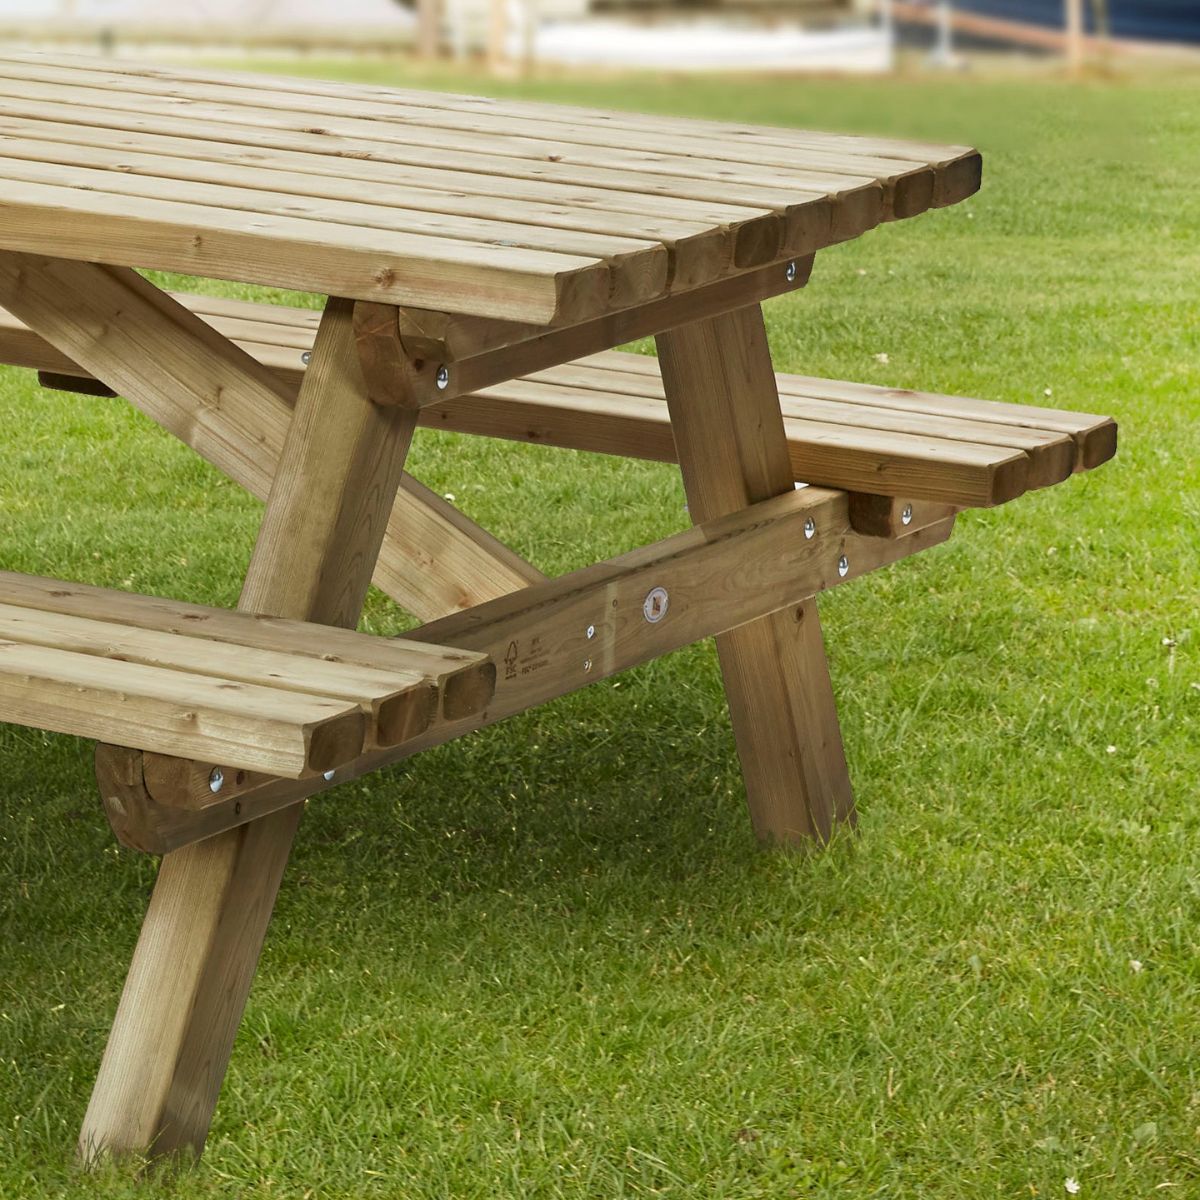 rolstoel picknicktafel rolstoelpicknicktafel voor mensen met of zonder met goed kwaliteit hout staat goed in elke tuin gehandicapt 